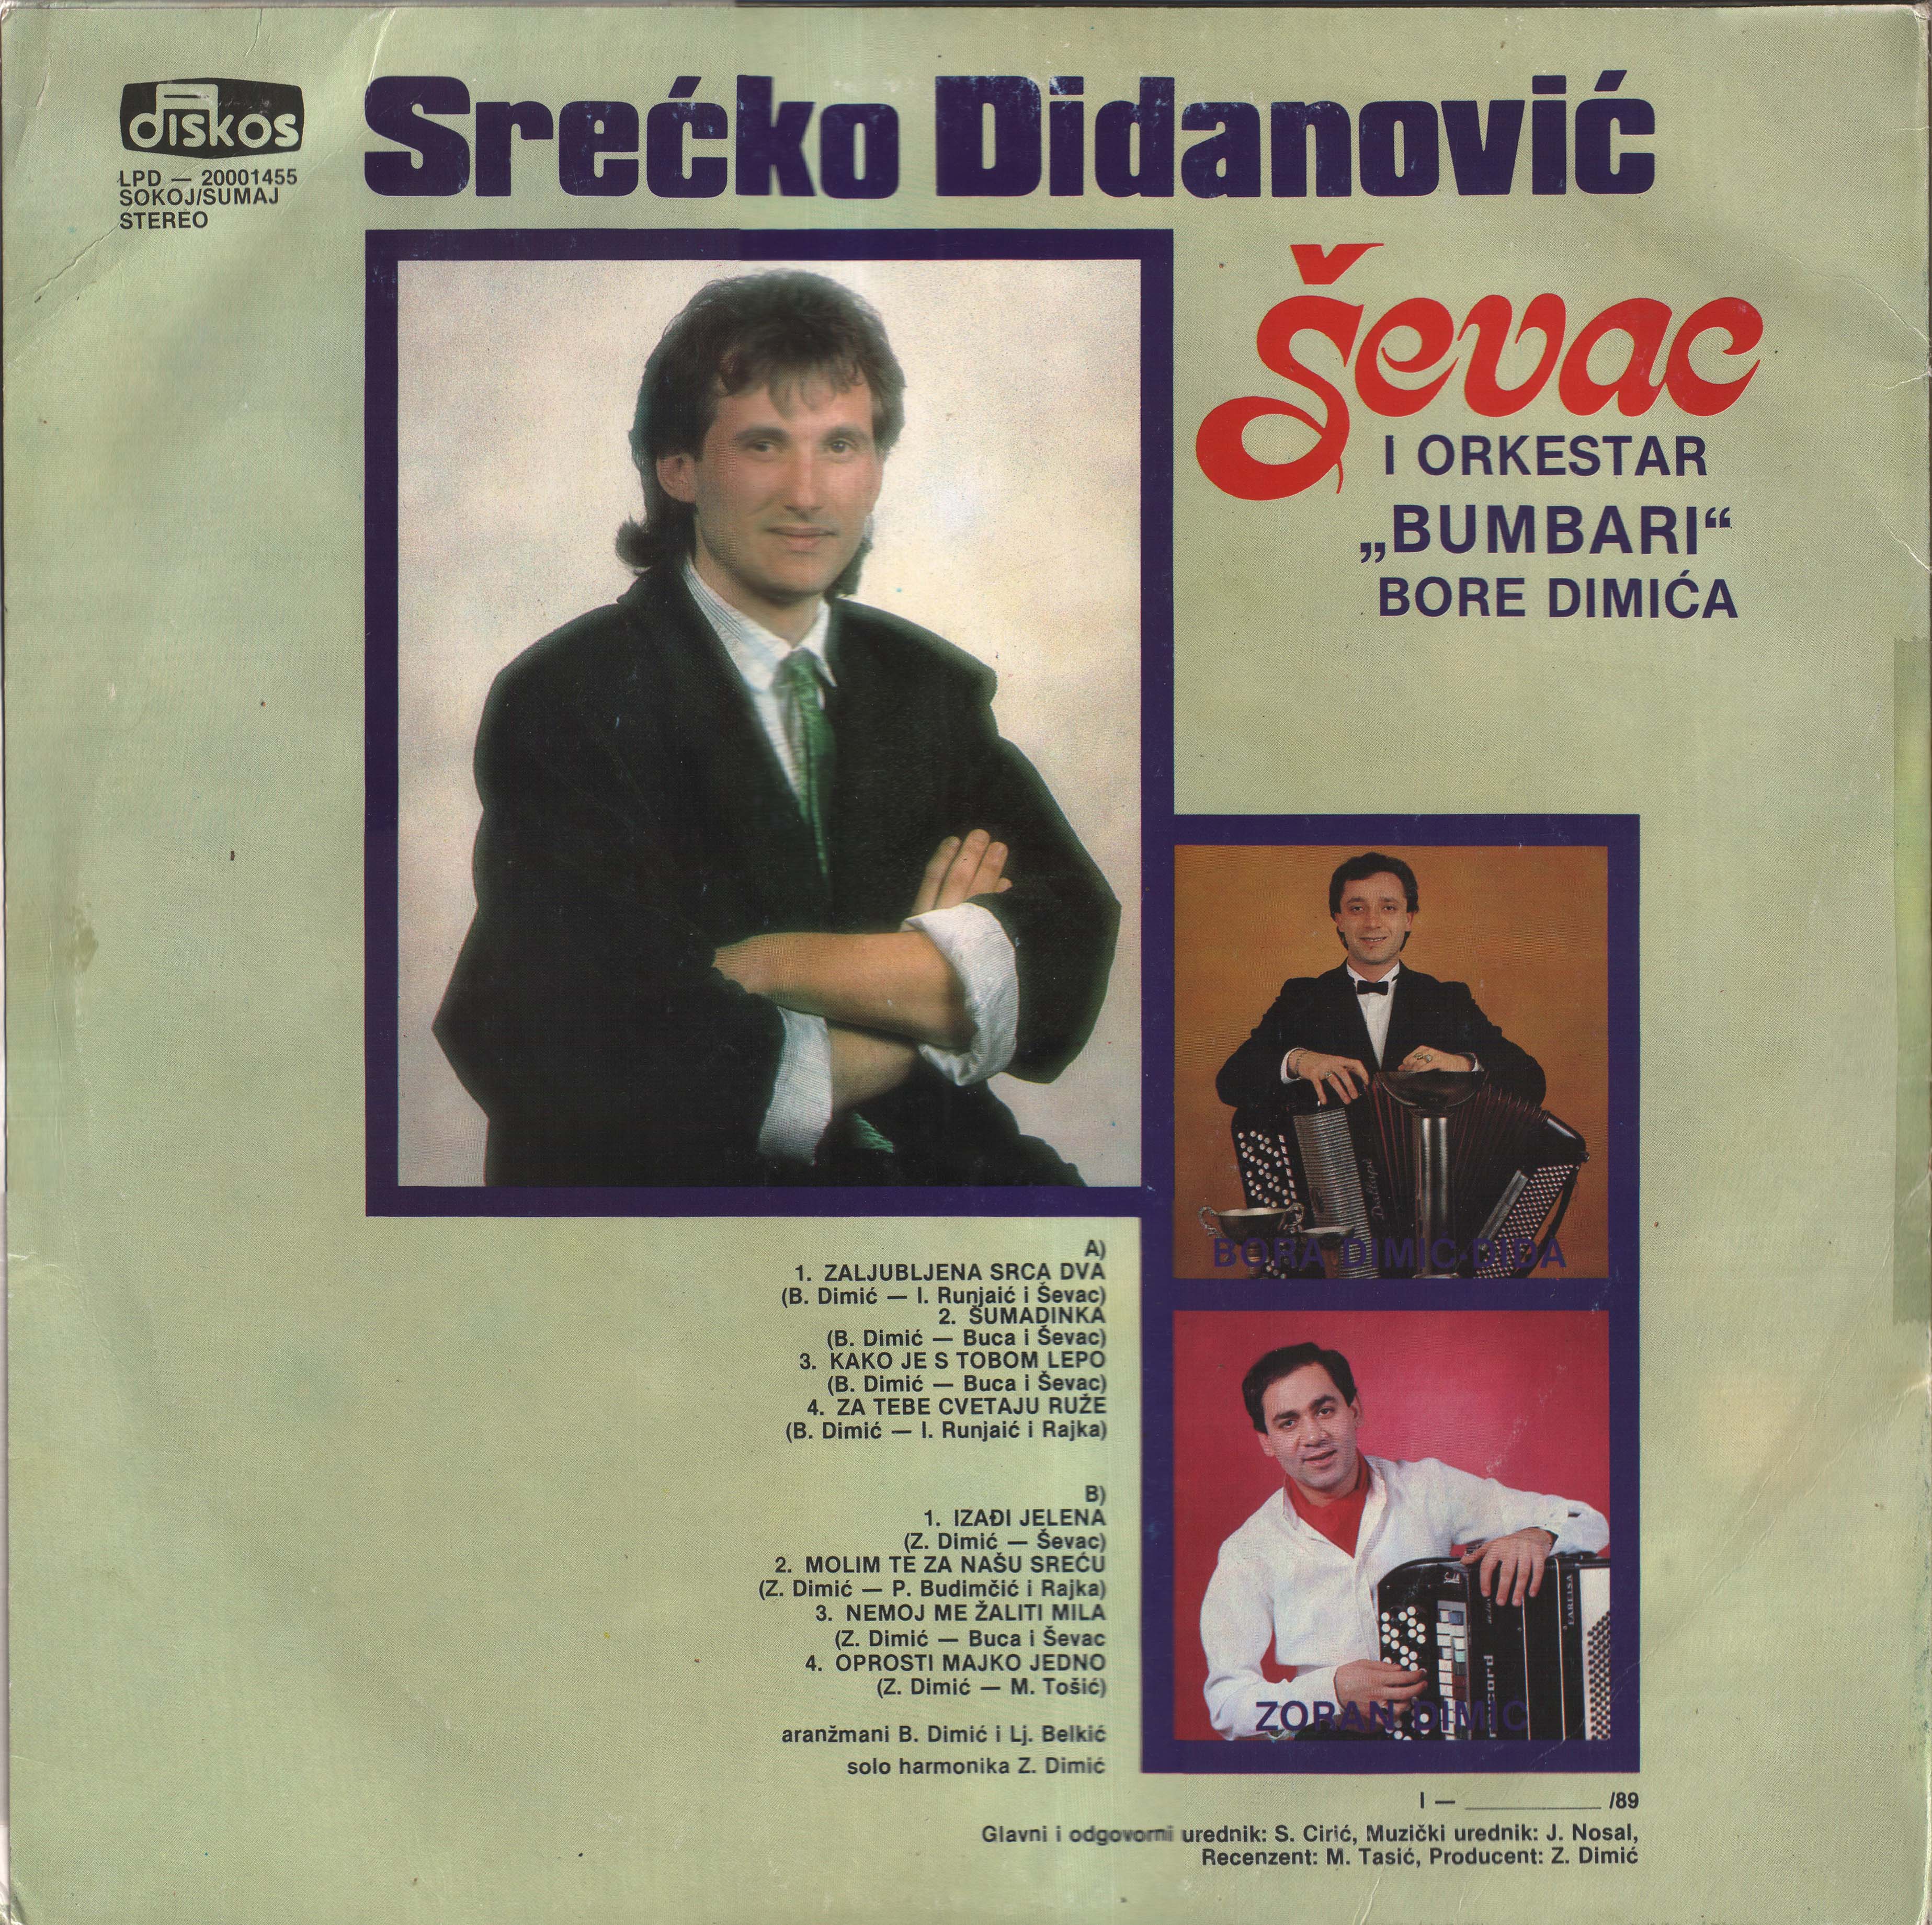 Srecko Didanovic 1989 Z